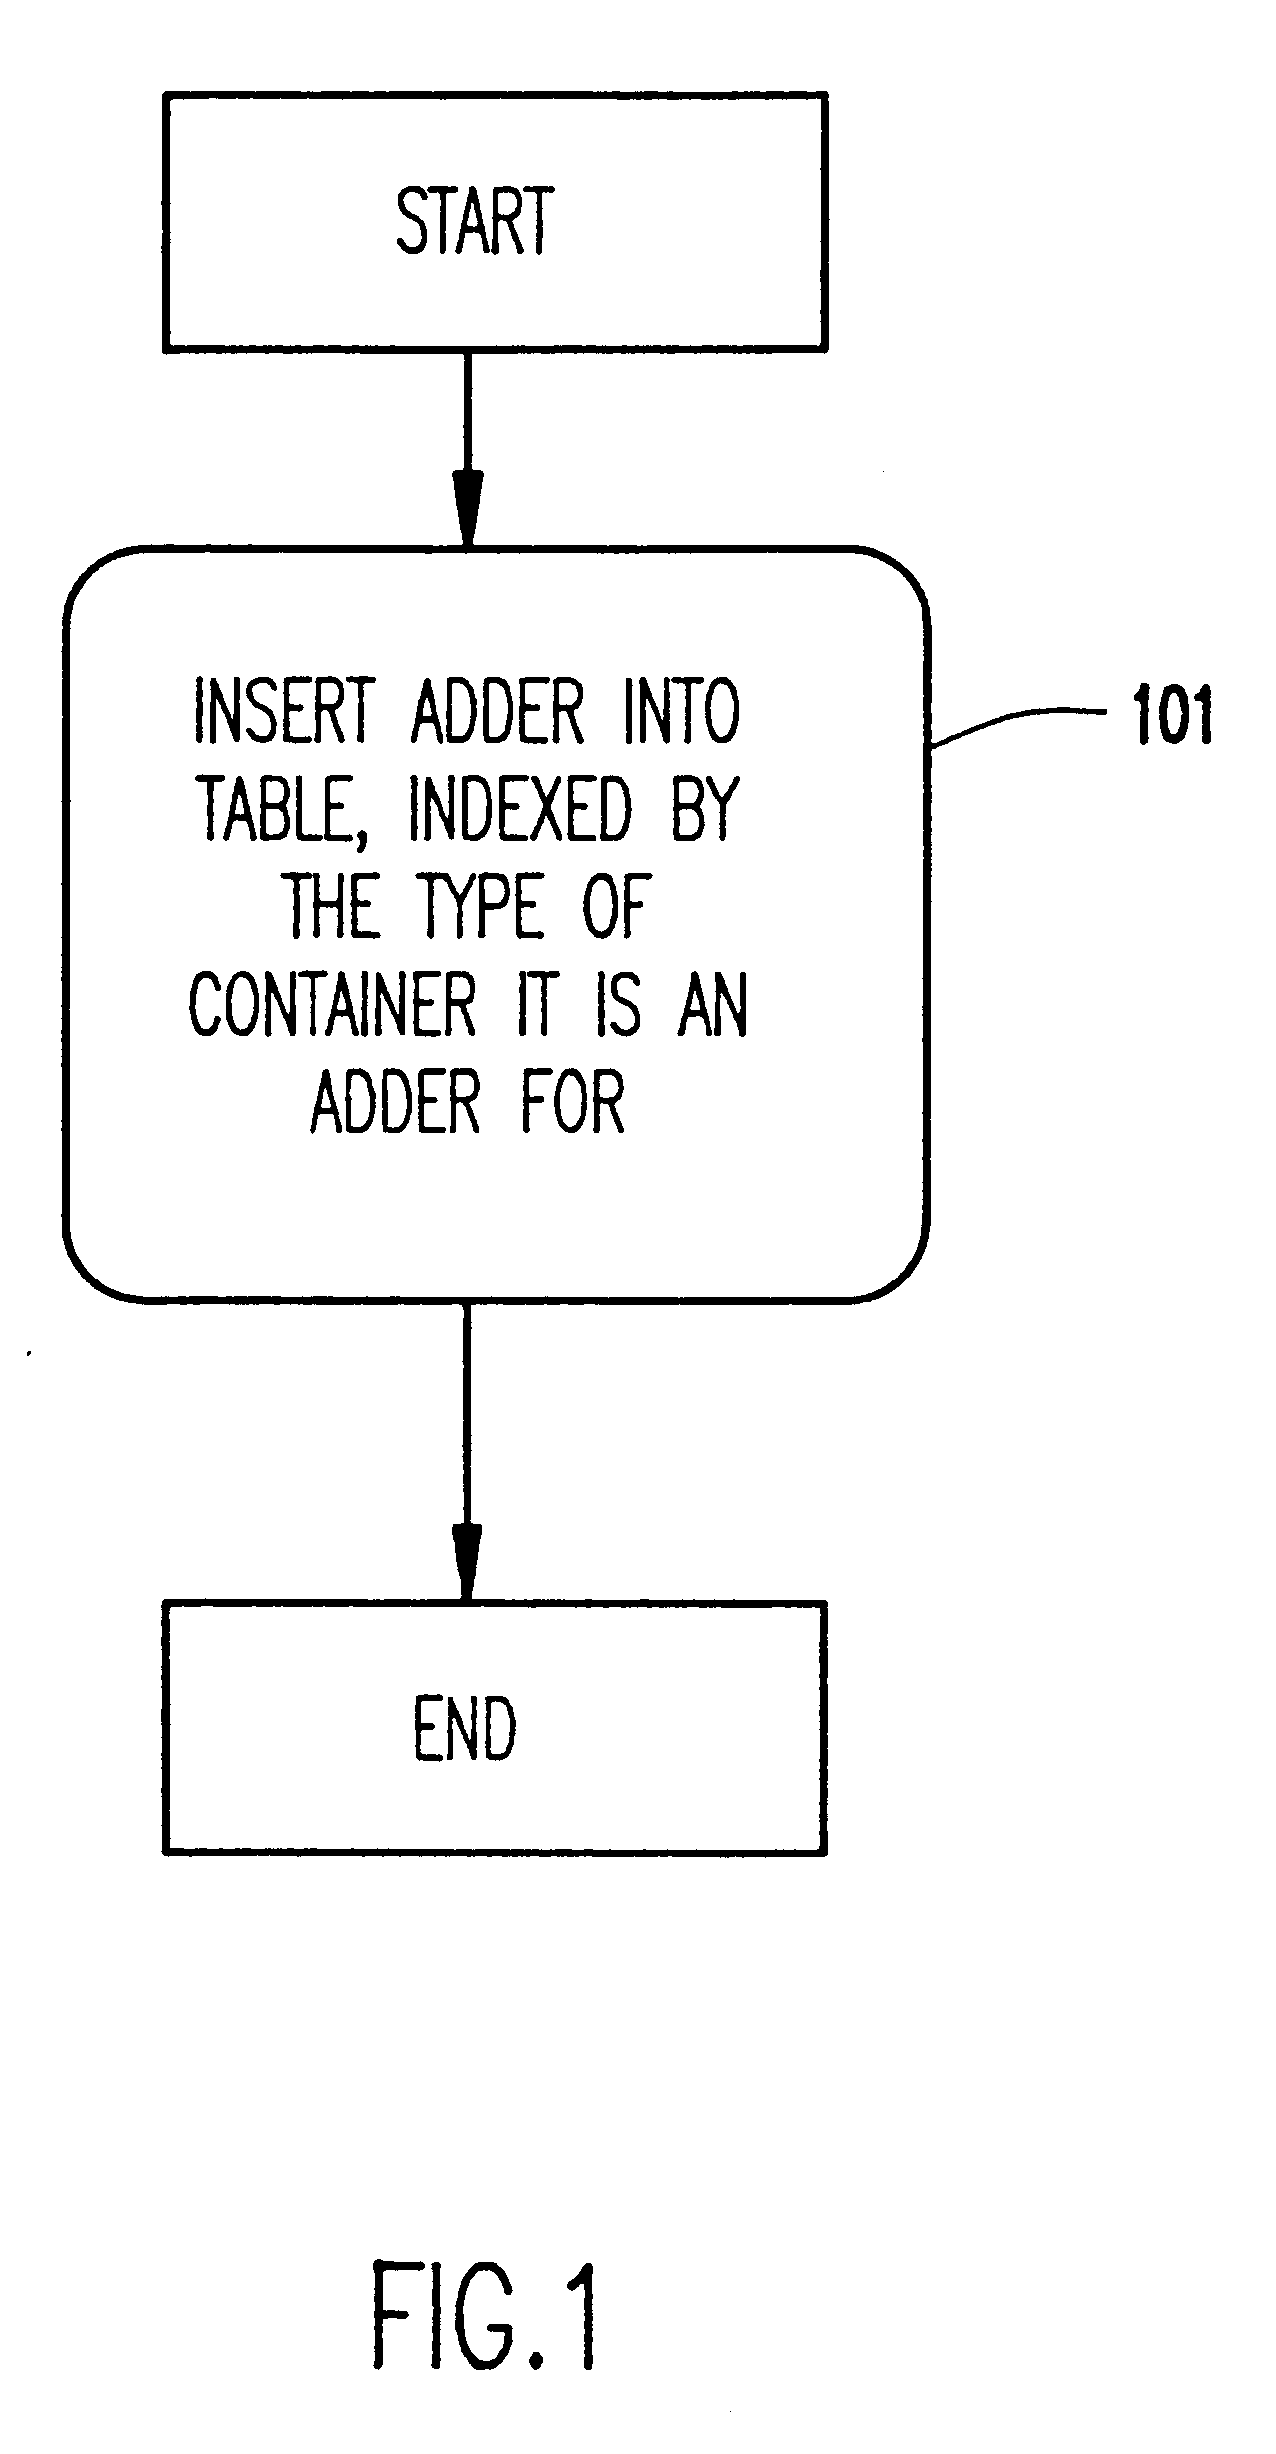 Uniform mechanism for building containment hierarchies